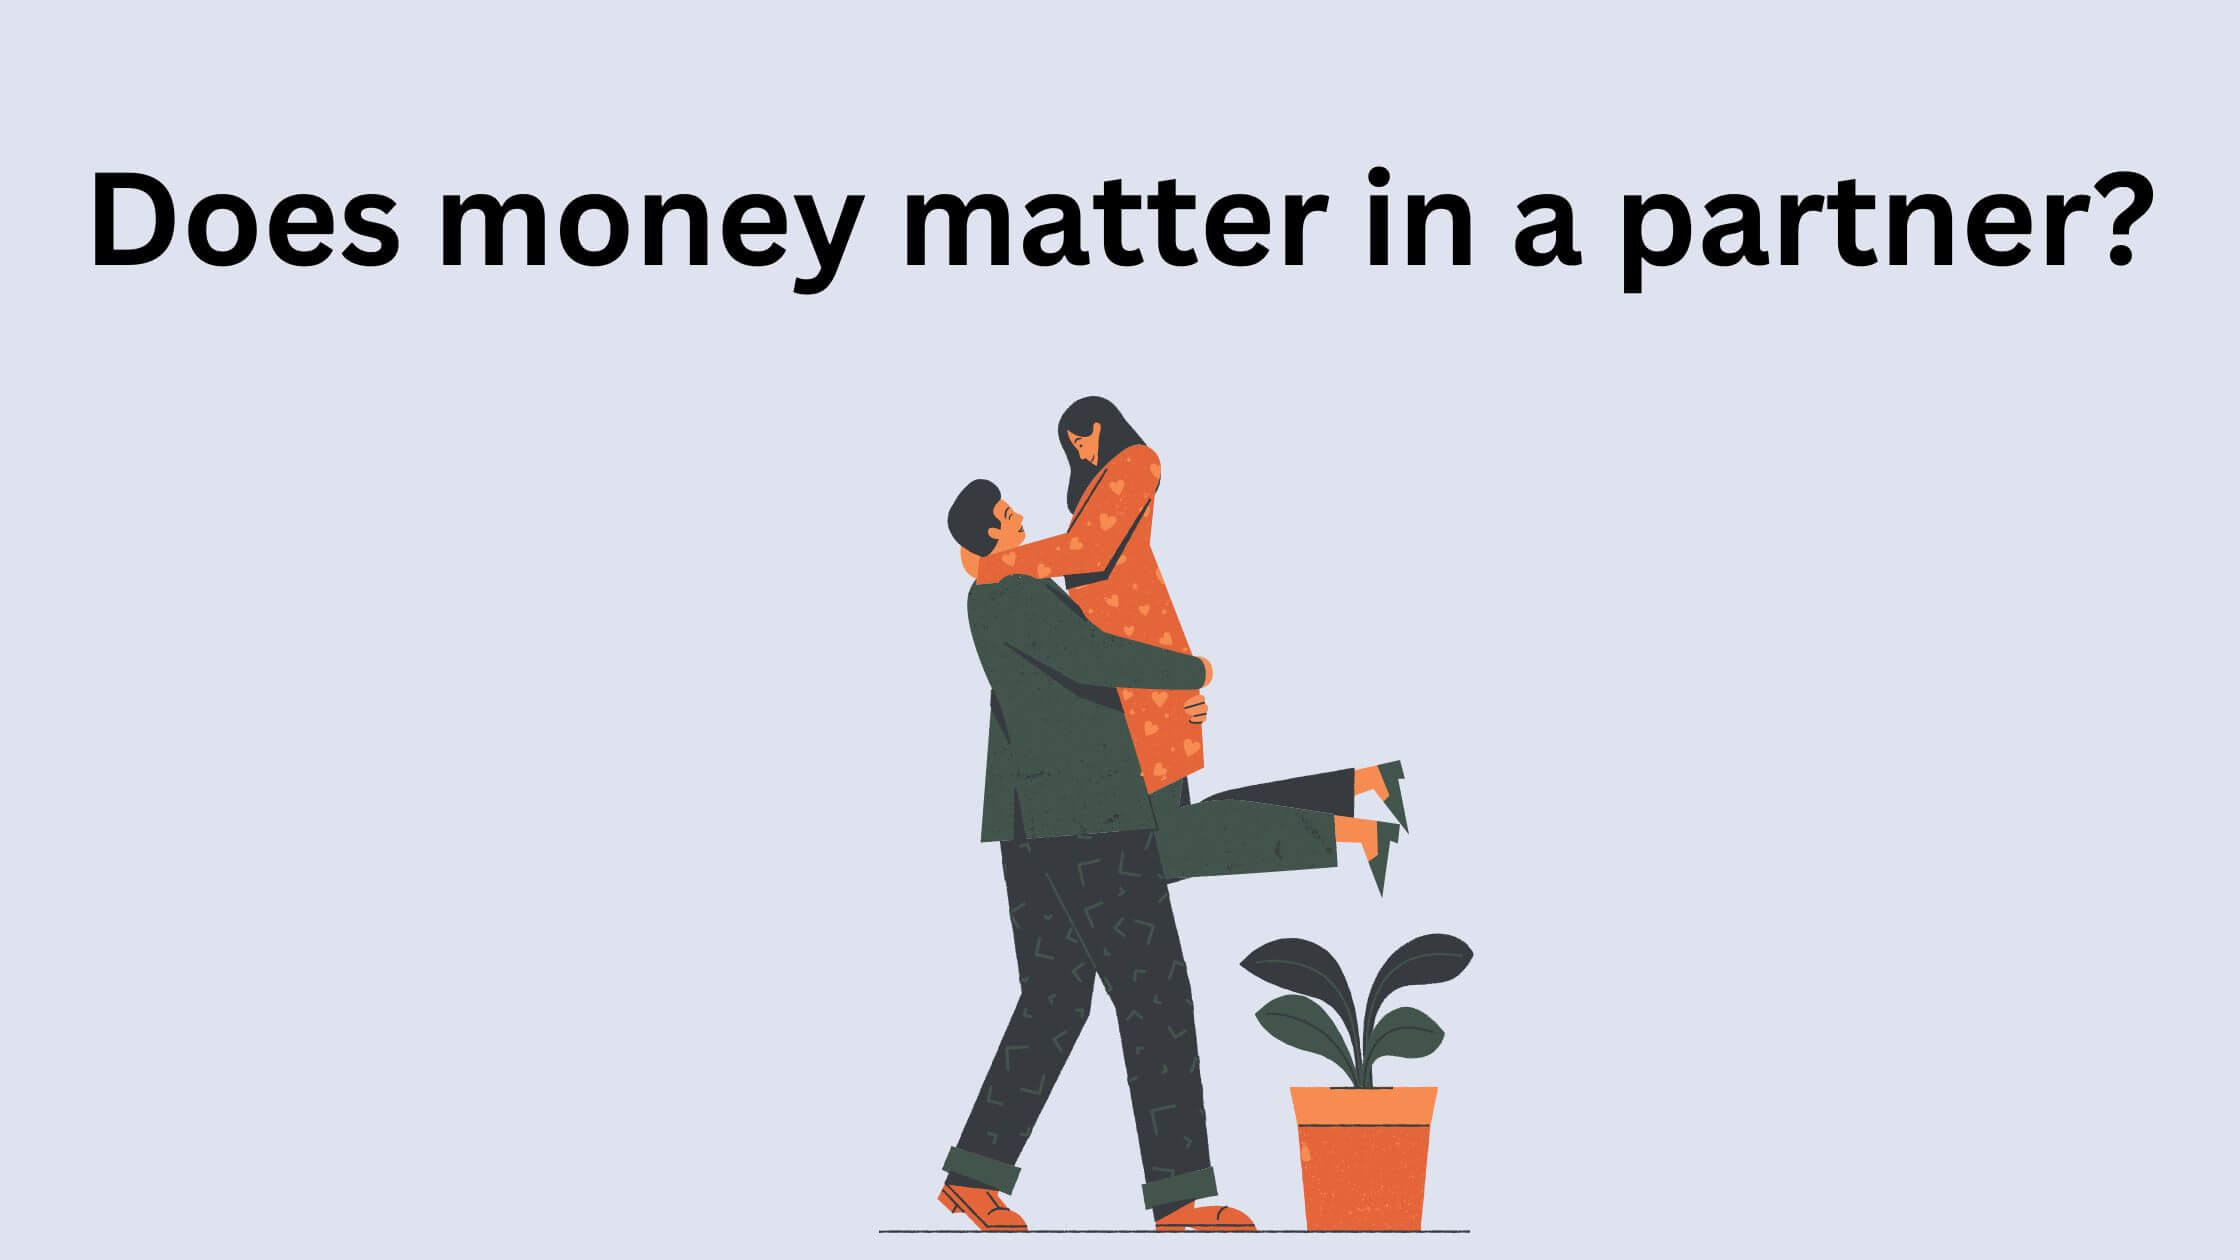 Does money matter when choosing a partner?